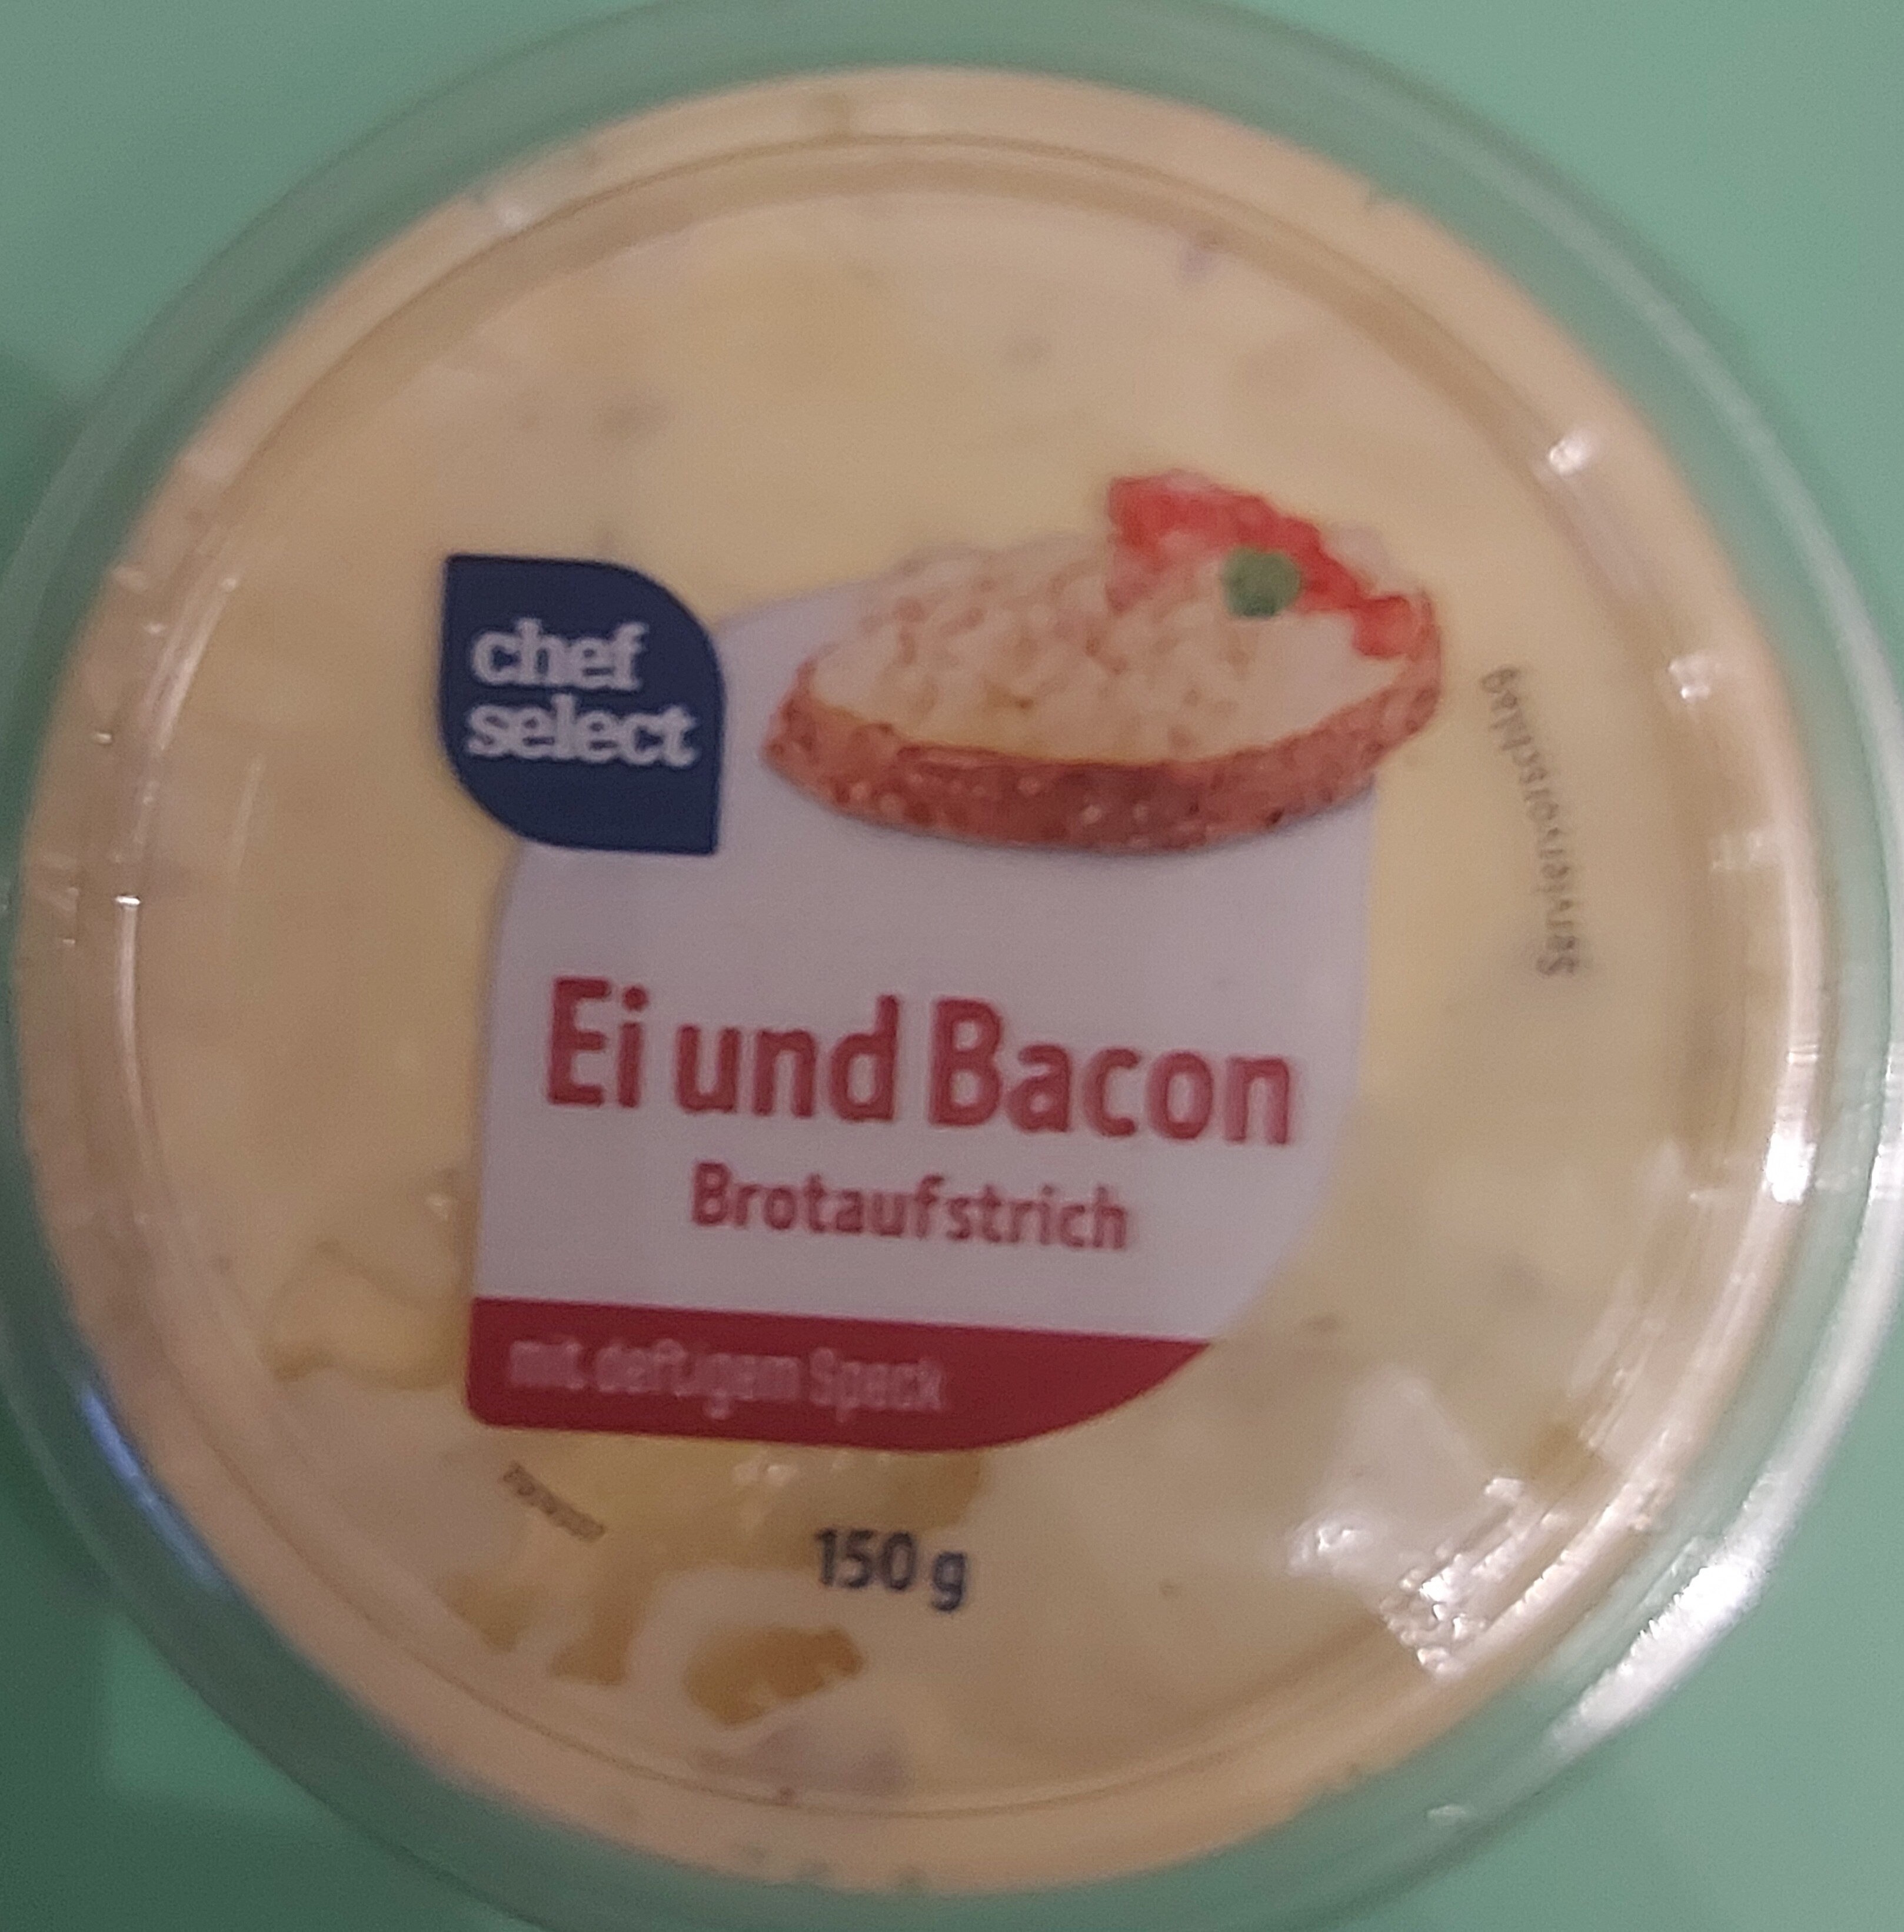 Ei und Bacon Brotaufstrich - Product - de